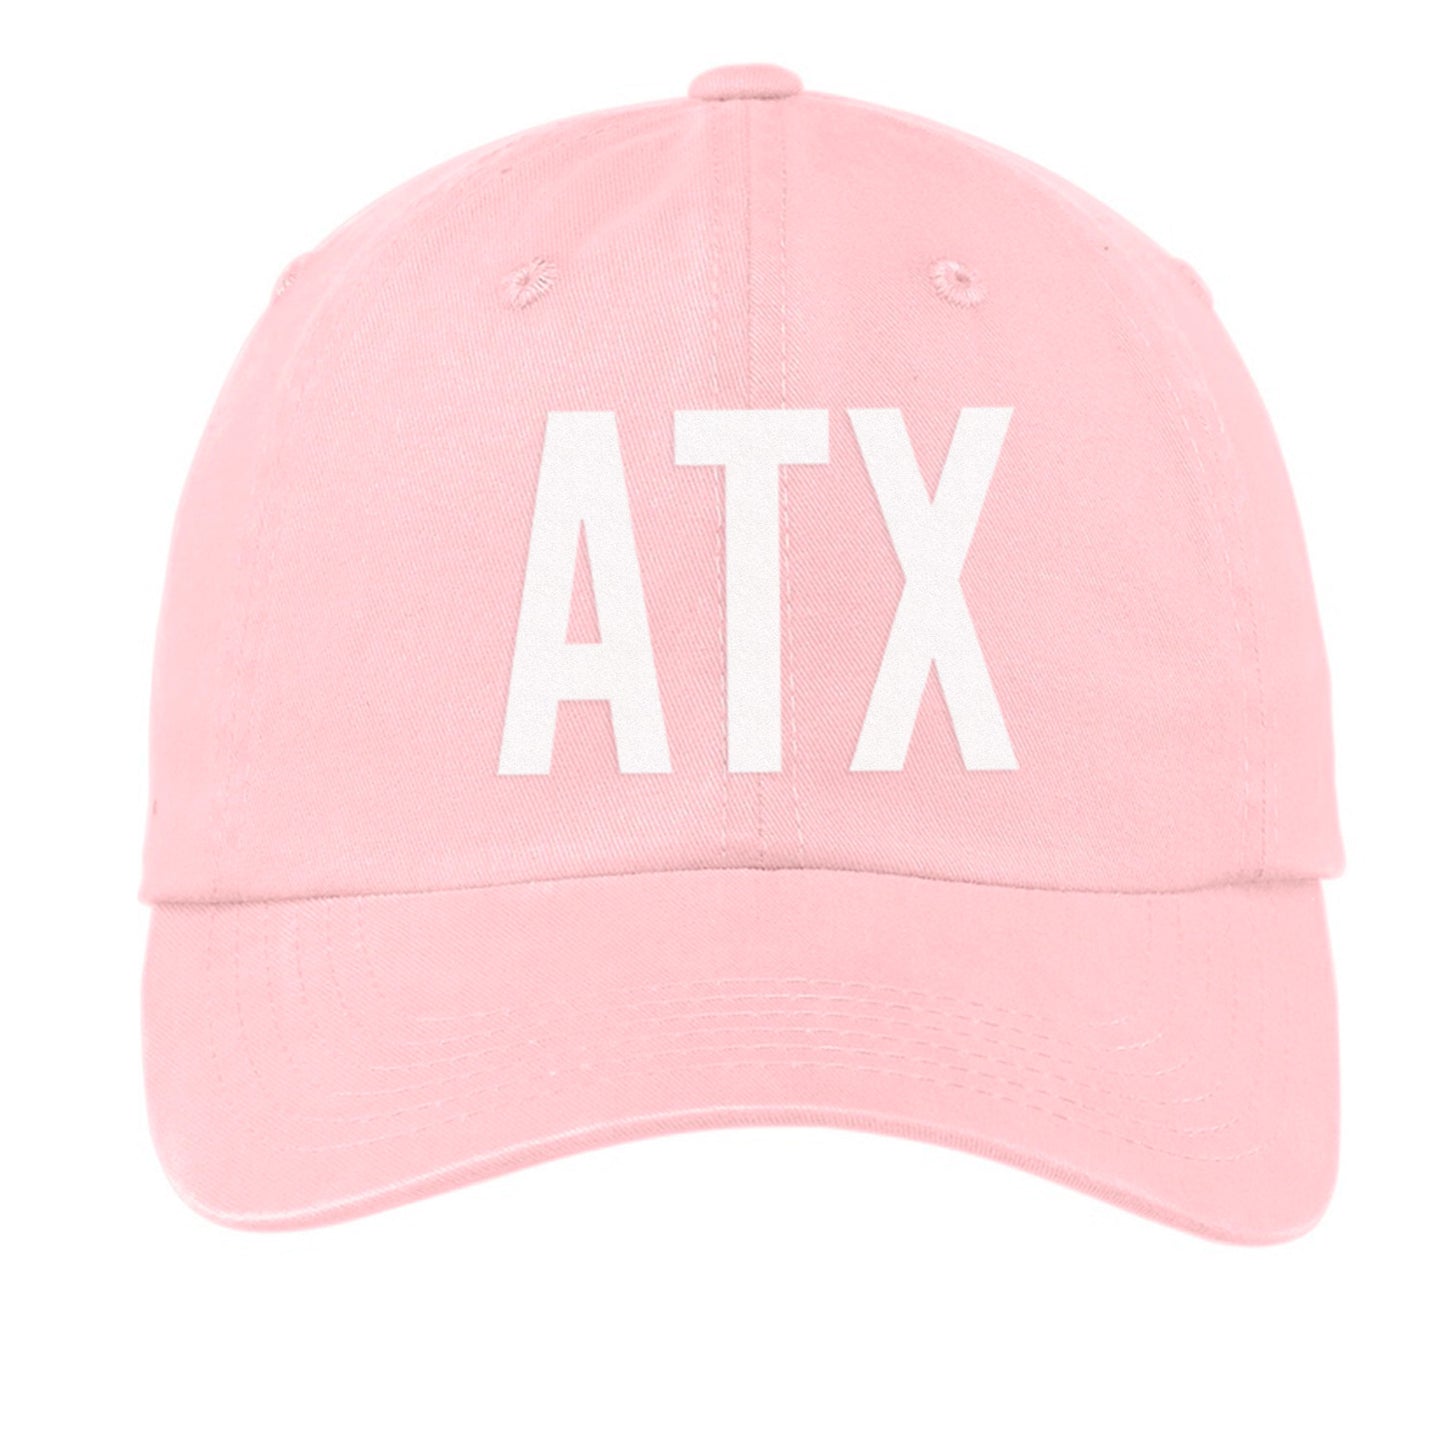 ATX Baseball Cap